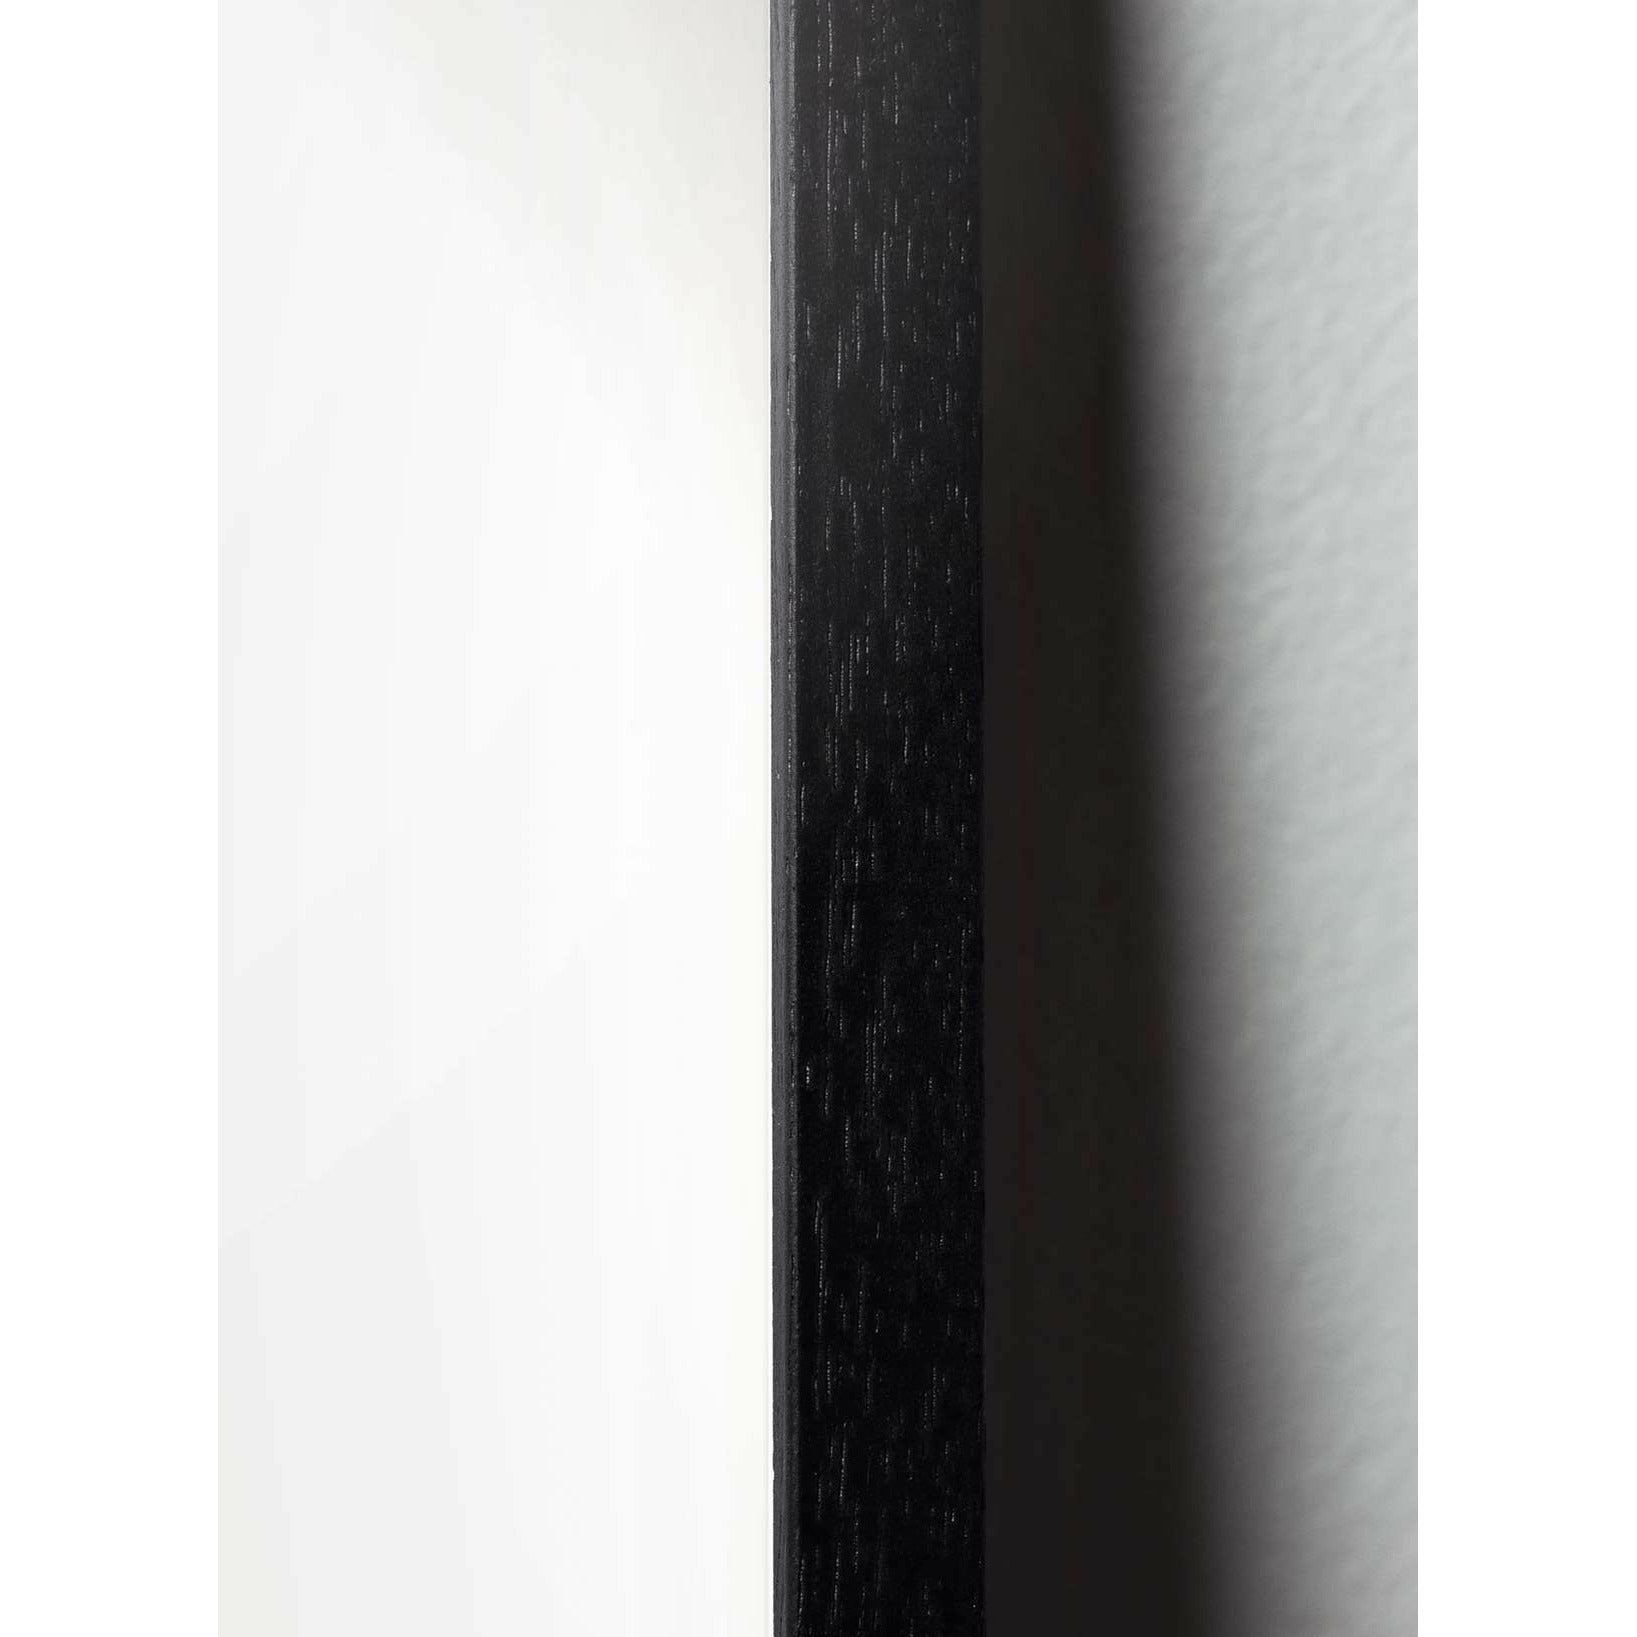 Plakát s labuťovou sponou s labuťovou sponou, rám v černém lakovaném dřevu 30x40 cm, růžové pozadí